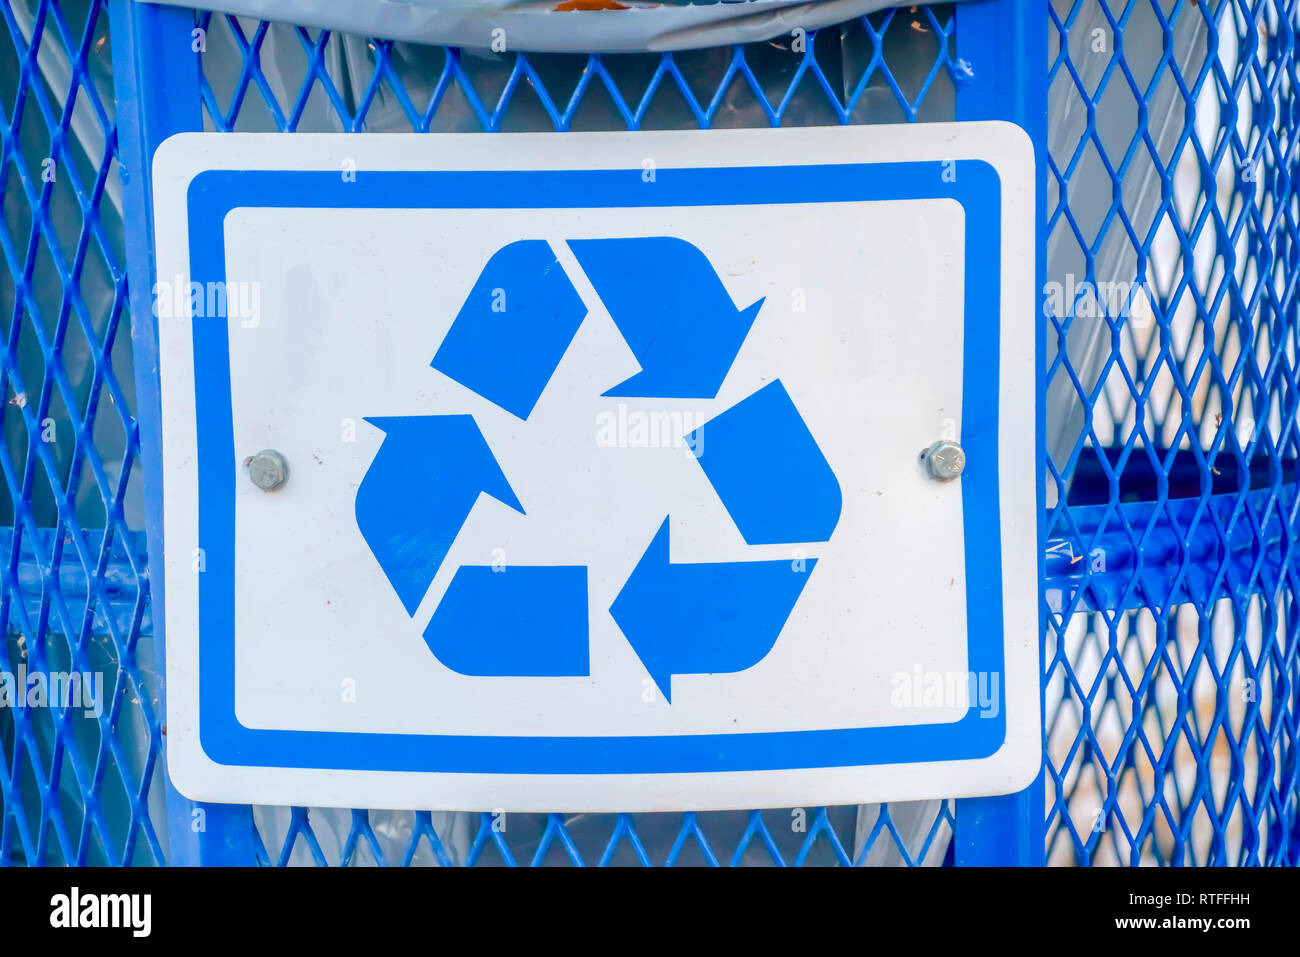 Contenedor de basura azul con un símbolo de reciclado. Vista de cerca de un  cesto de basura azul metálico con una bolsa de plástico interior. Un  símbolo de reciclado pueden verse en